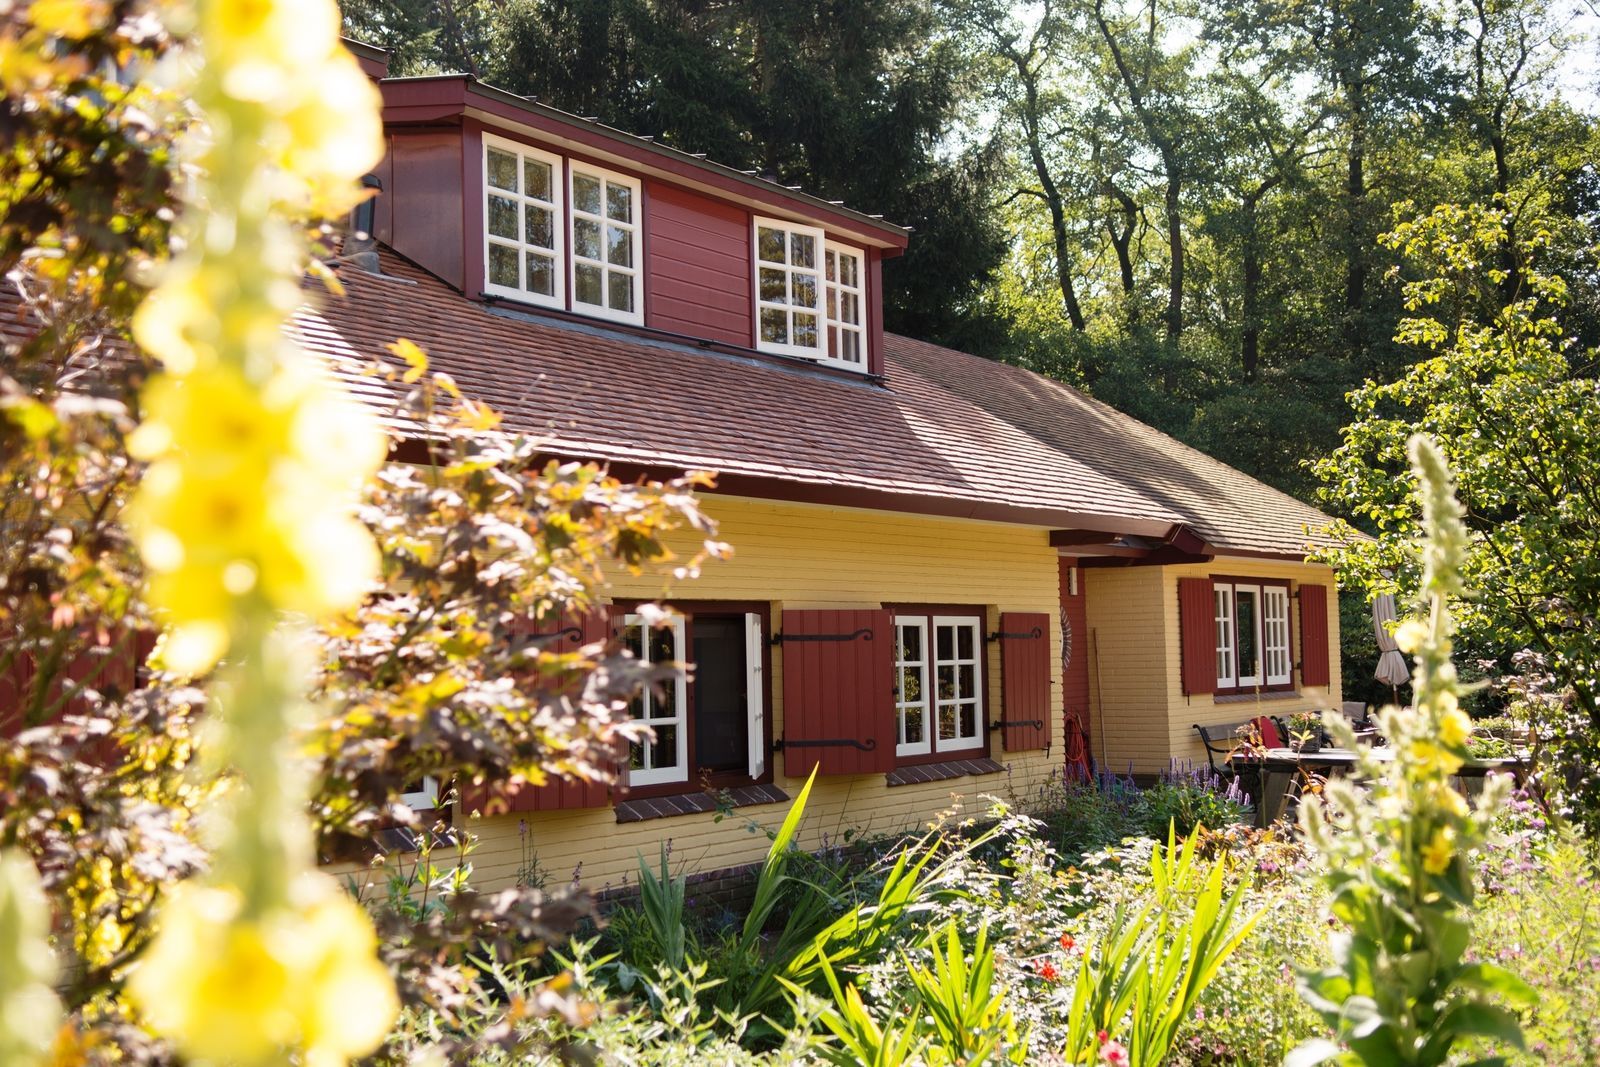 Buitenplaets de Heide Woonhuis - vakantiehuis op privelandgoed in Twente voor actieve gezinnen 